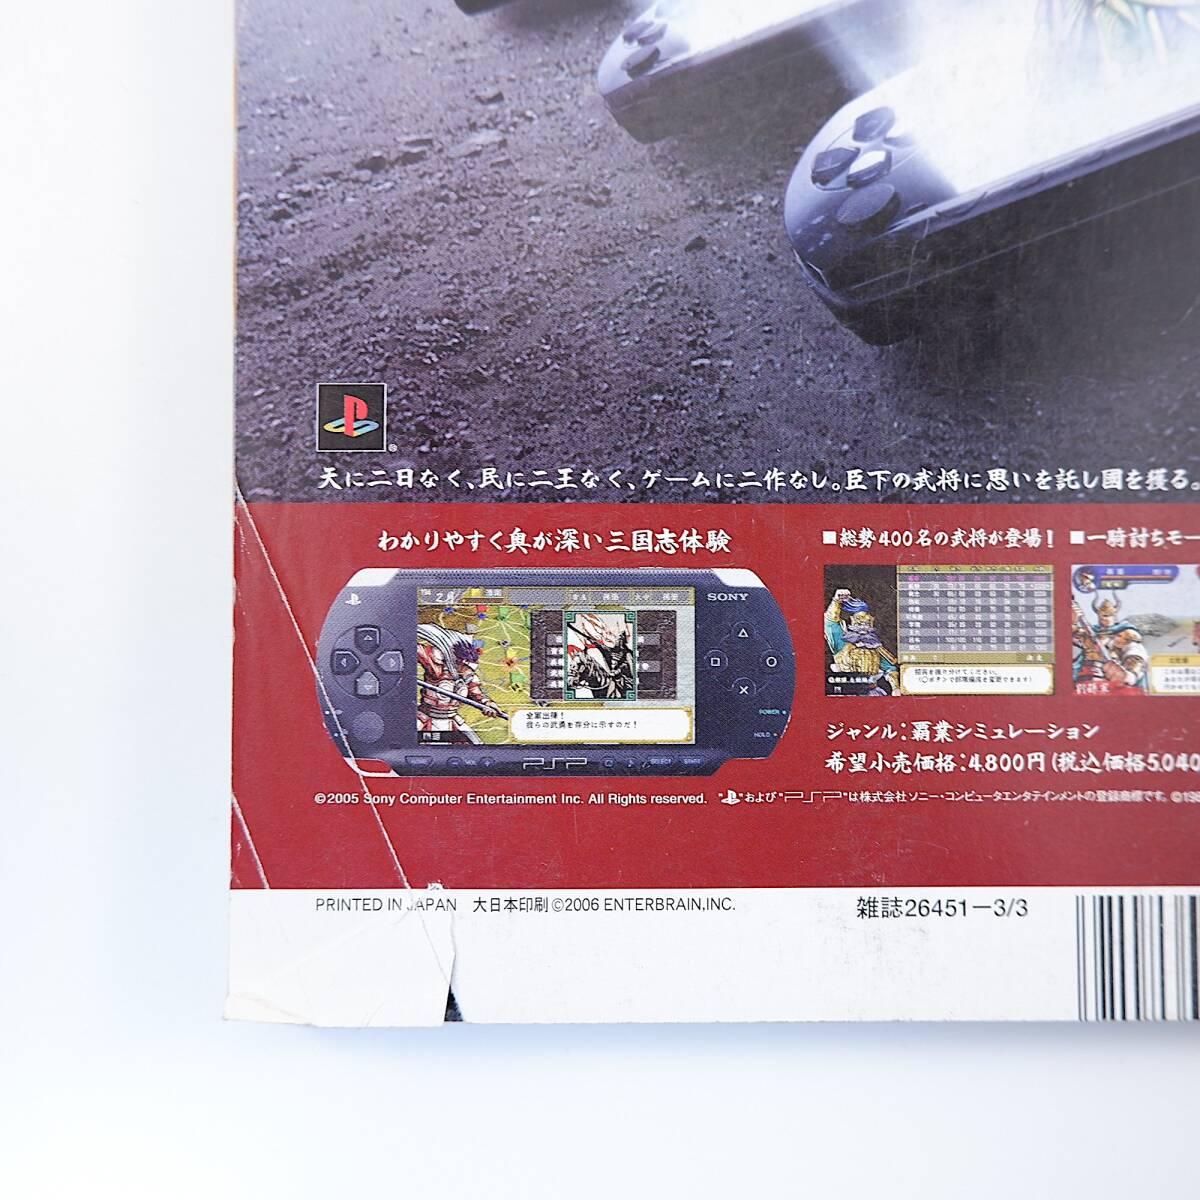 ファミ通 2006年3月3日号／インタビュー◎ジャンヌダルク・織田裕二 県庁の星 FF7 モンスターハンター2 PSP DSライト バーチャファイター5_画像3